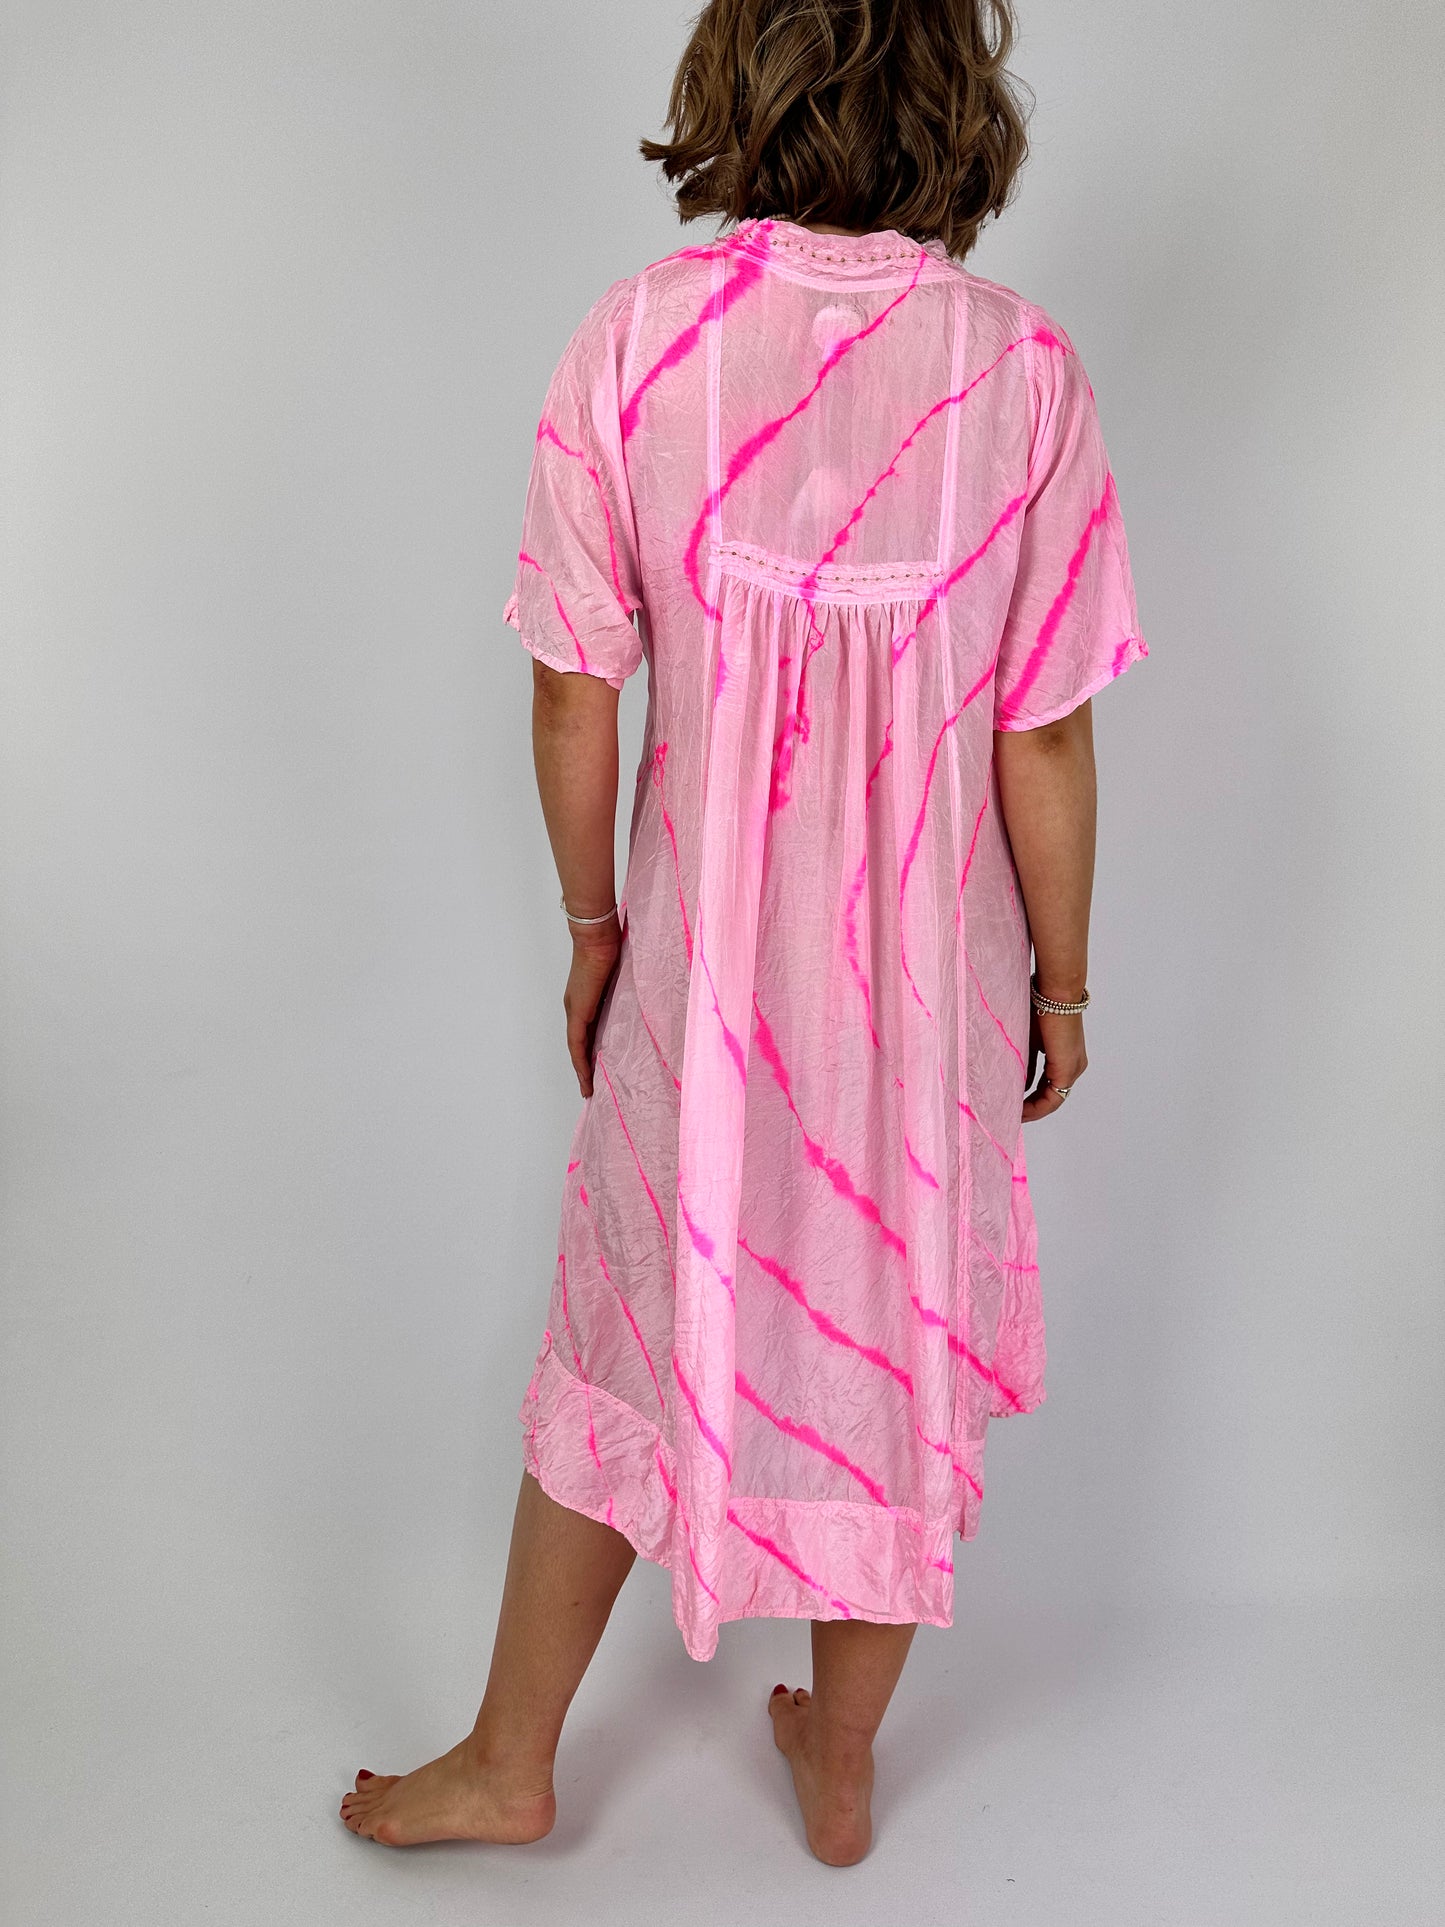 Agencies TurQuoise Rosie Imani Dress Fluoro